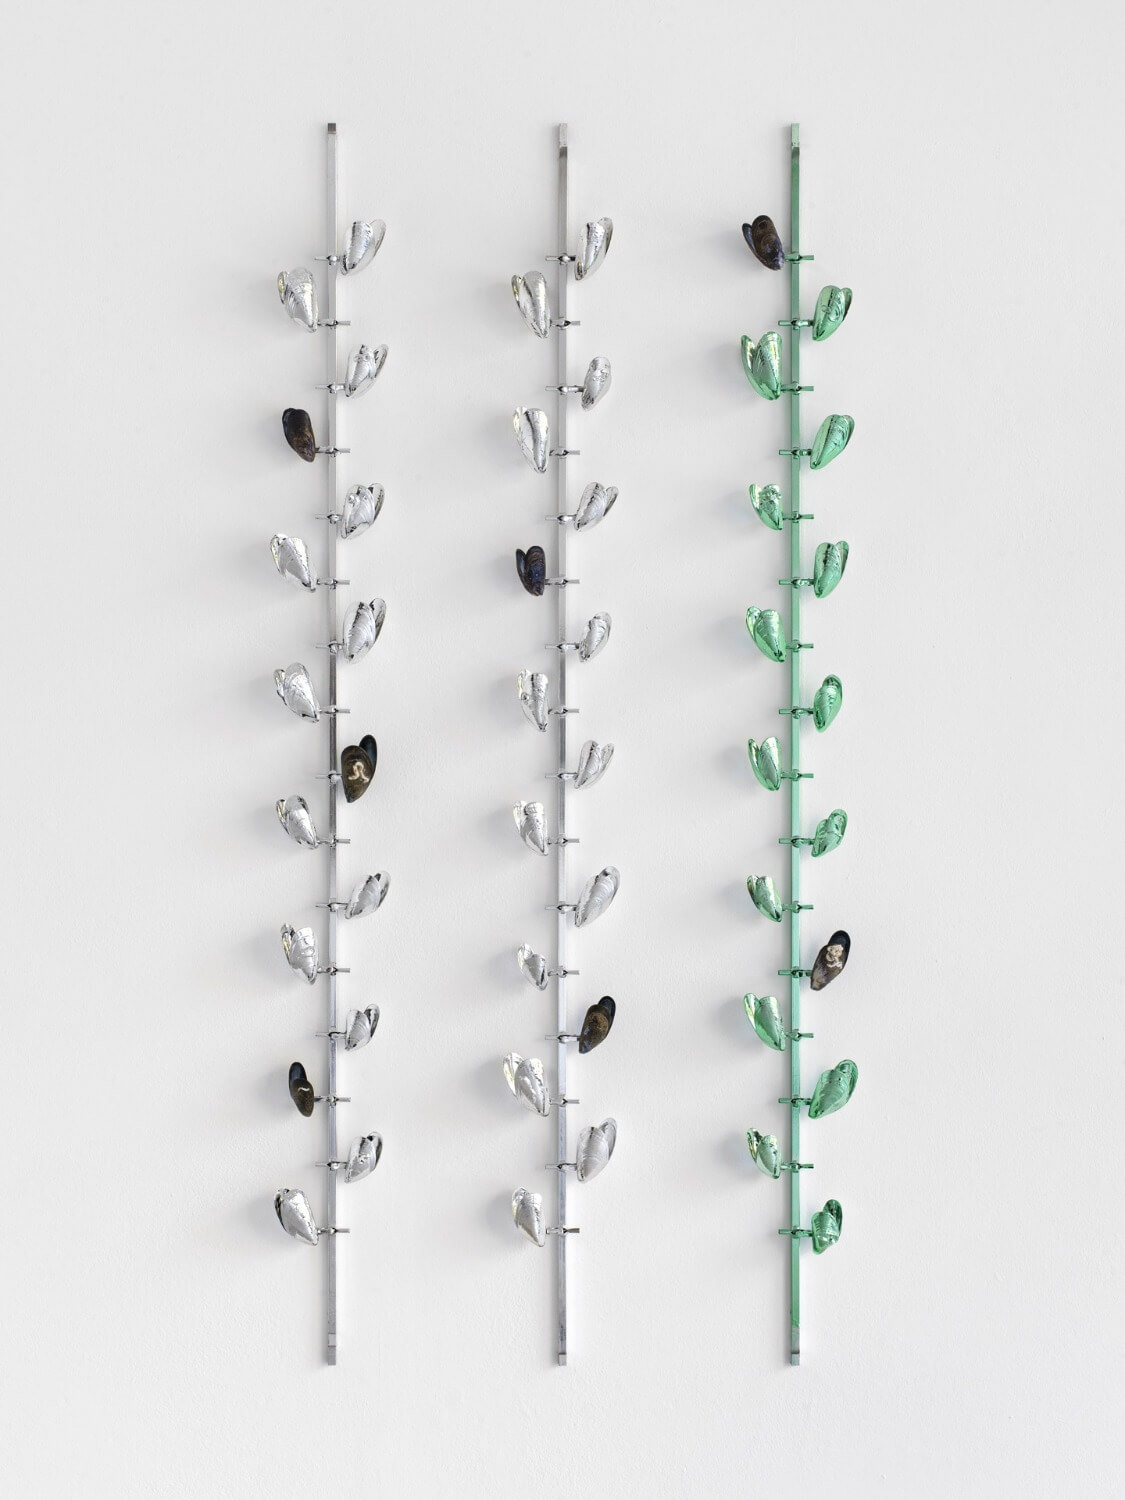 Linear Bivalves (Quintuple Green) (Detail), 2018 / 
Vakuummetallisierte und lackierte Muschelschalen auf massgefertigten Vorrichtungen / 
Foto: Roman März